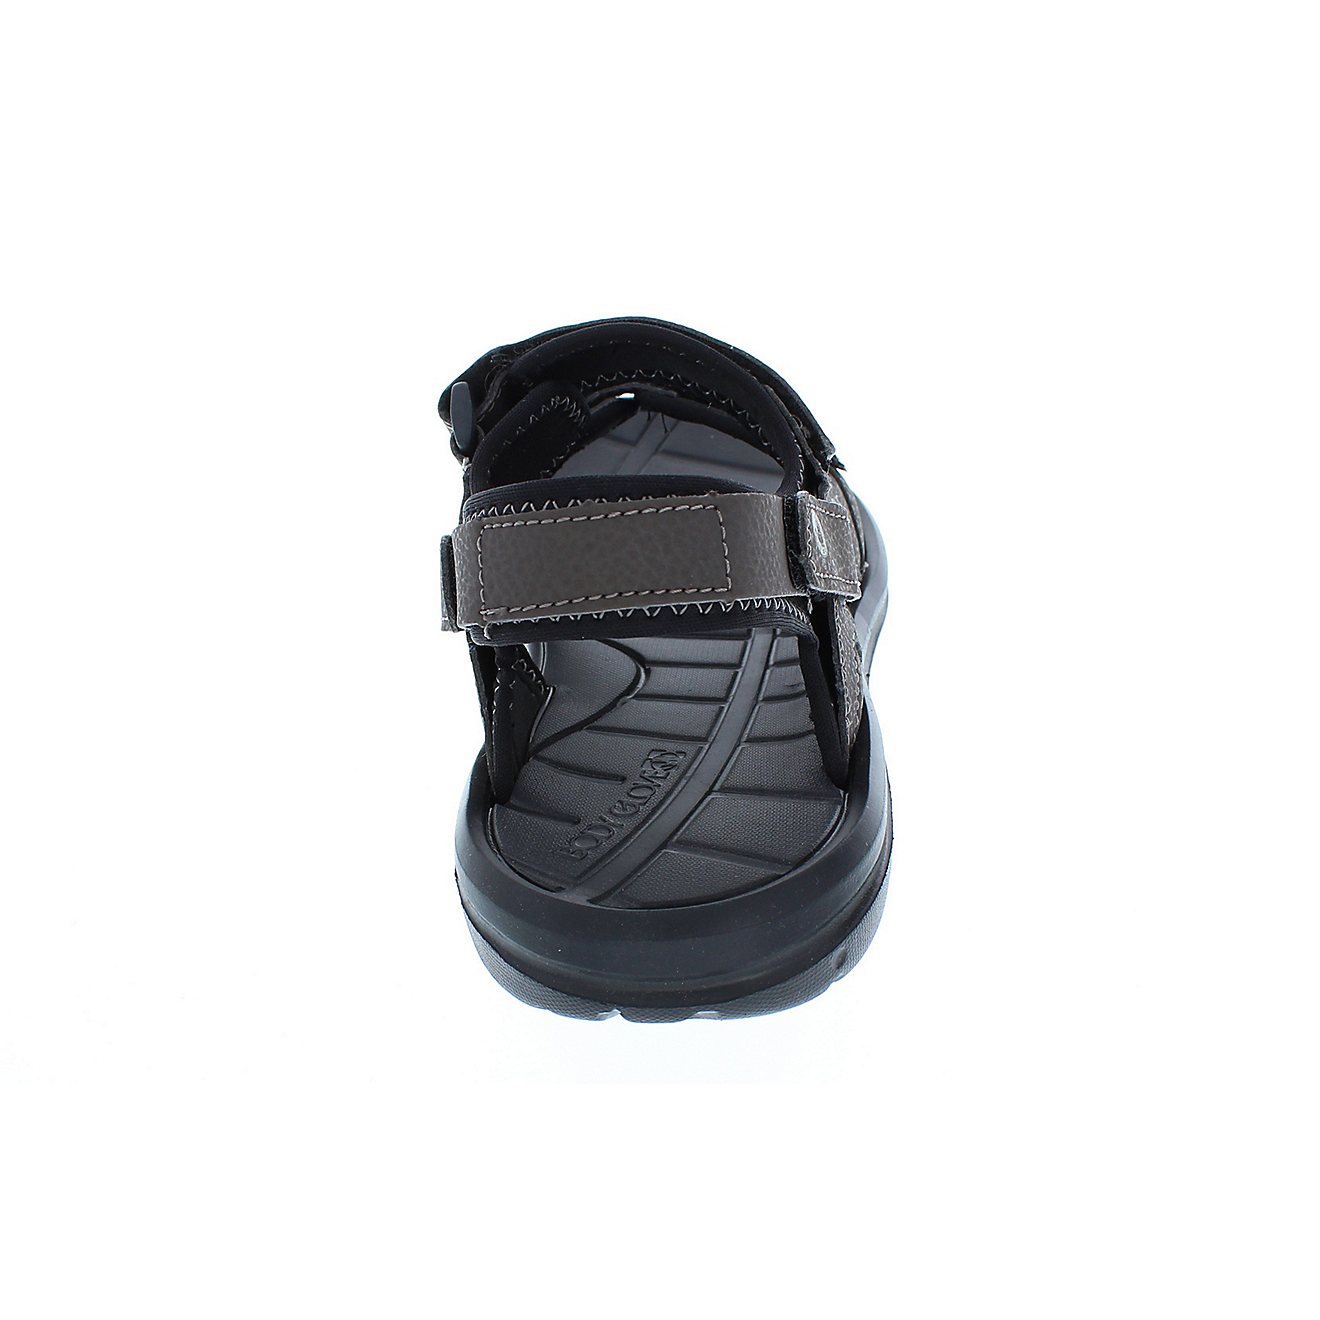 Body Glove Men's Adjustable Trek Sandals                                                                                         - view number 10